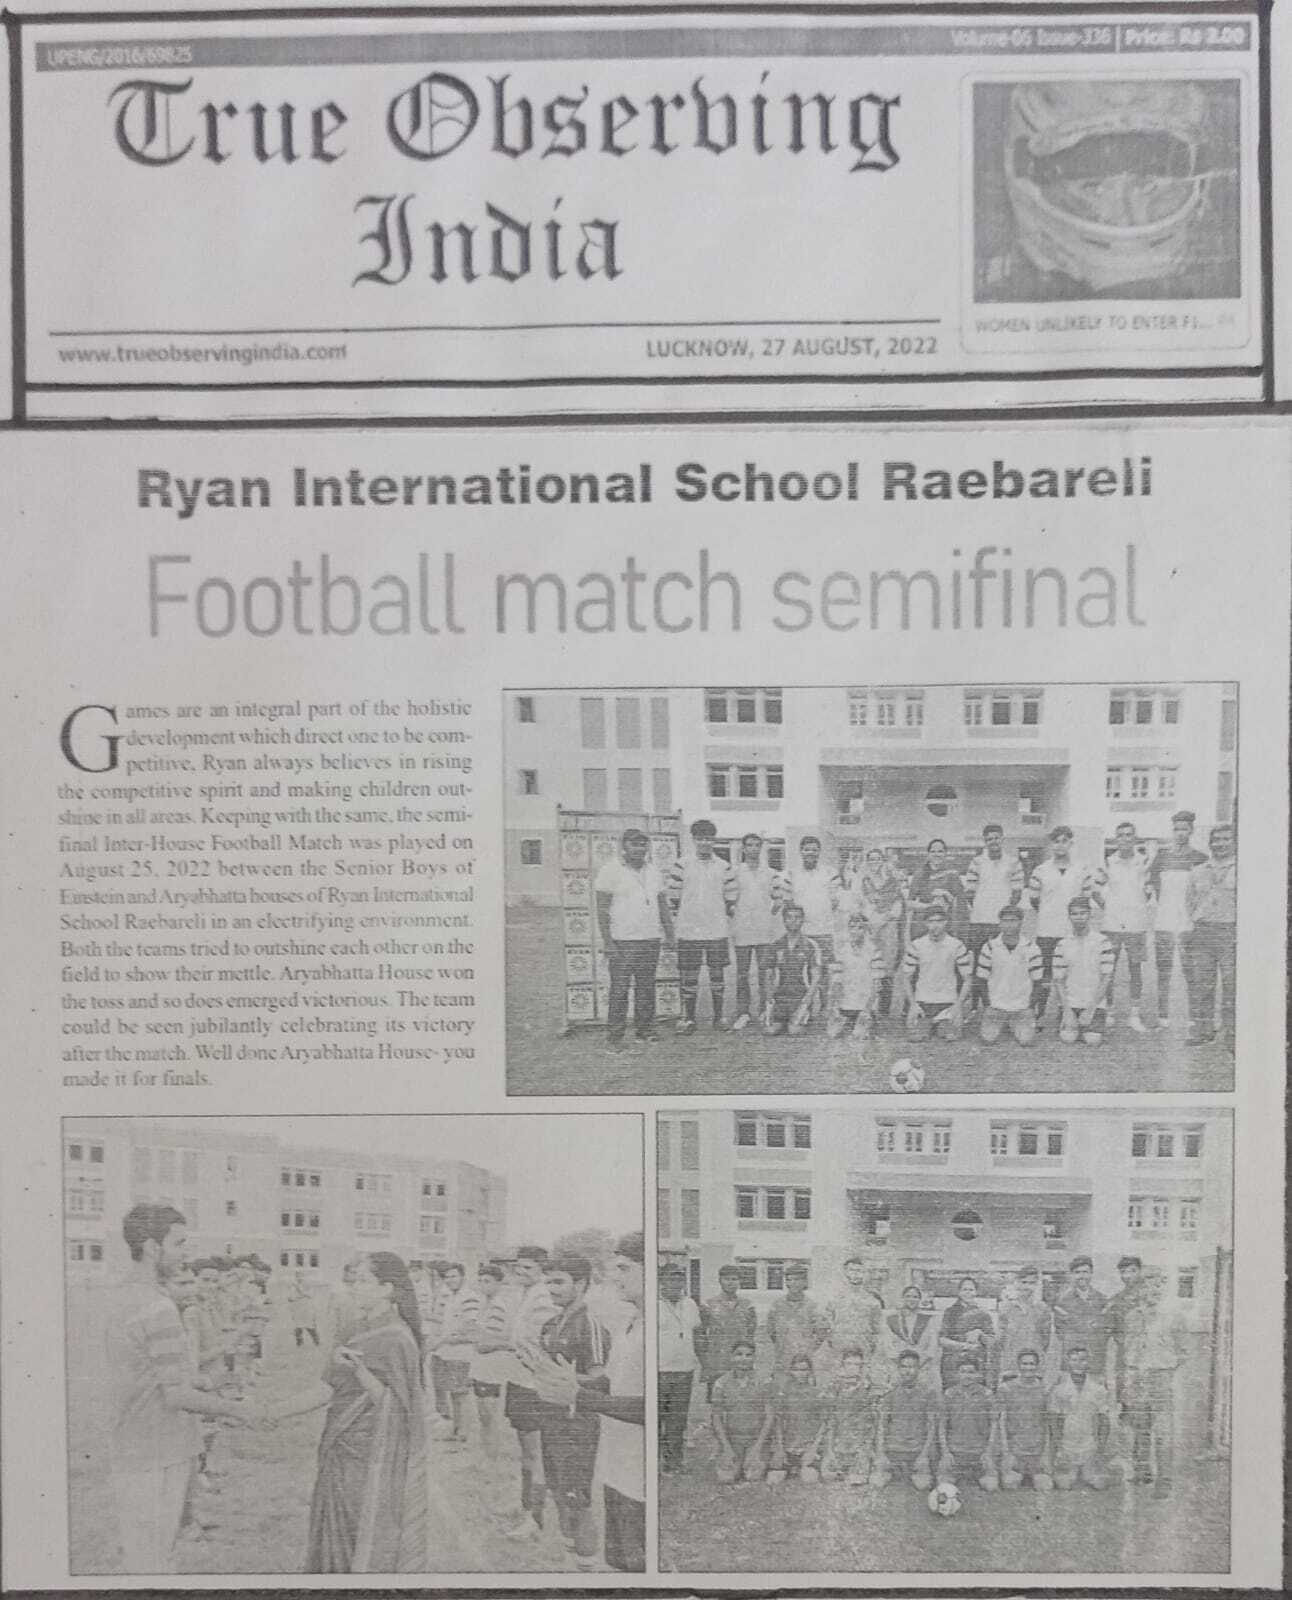 Interschool Football Match Semifinal on 27 Aug 2022